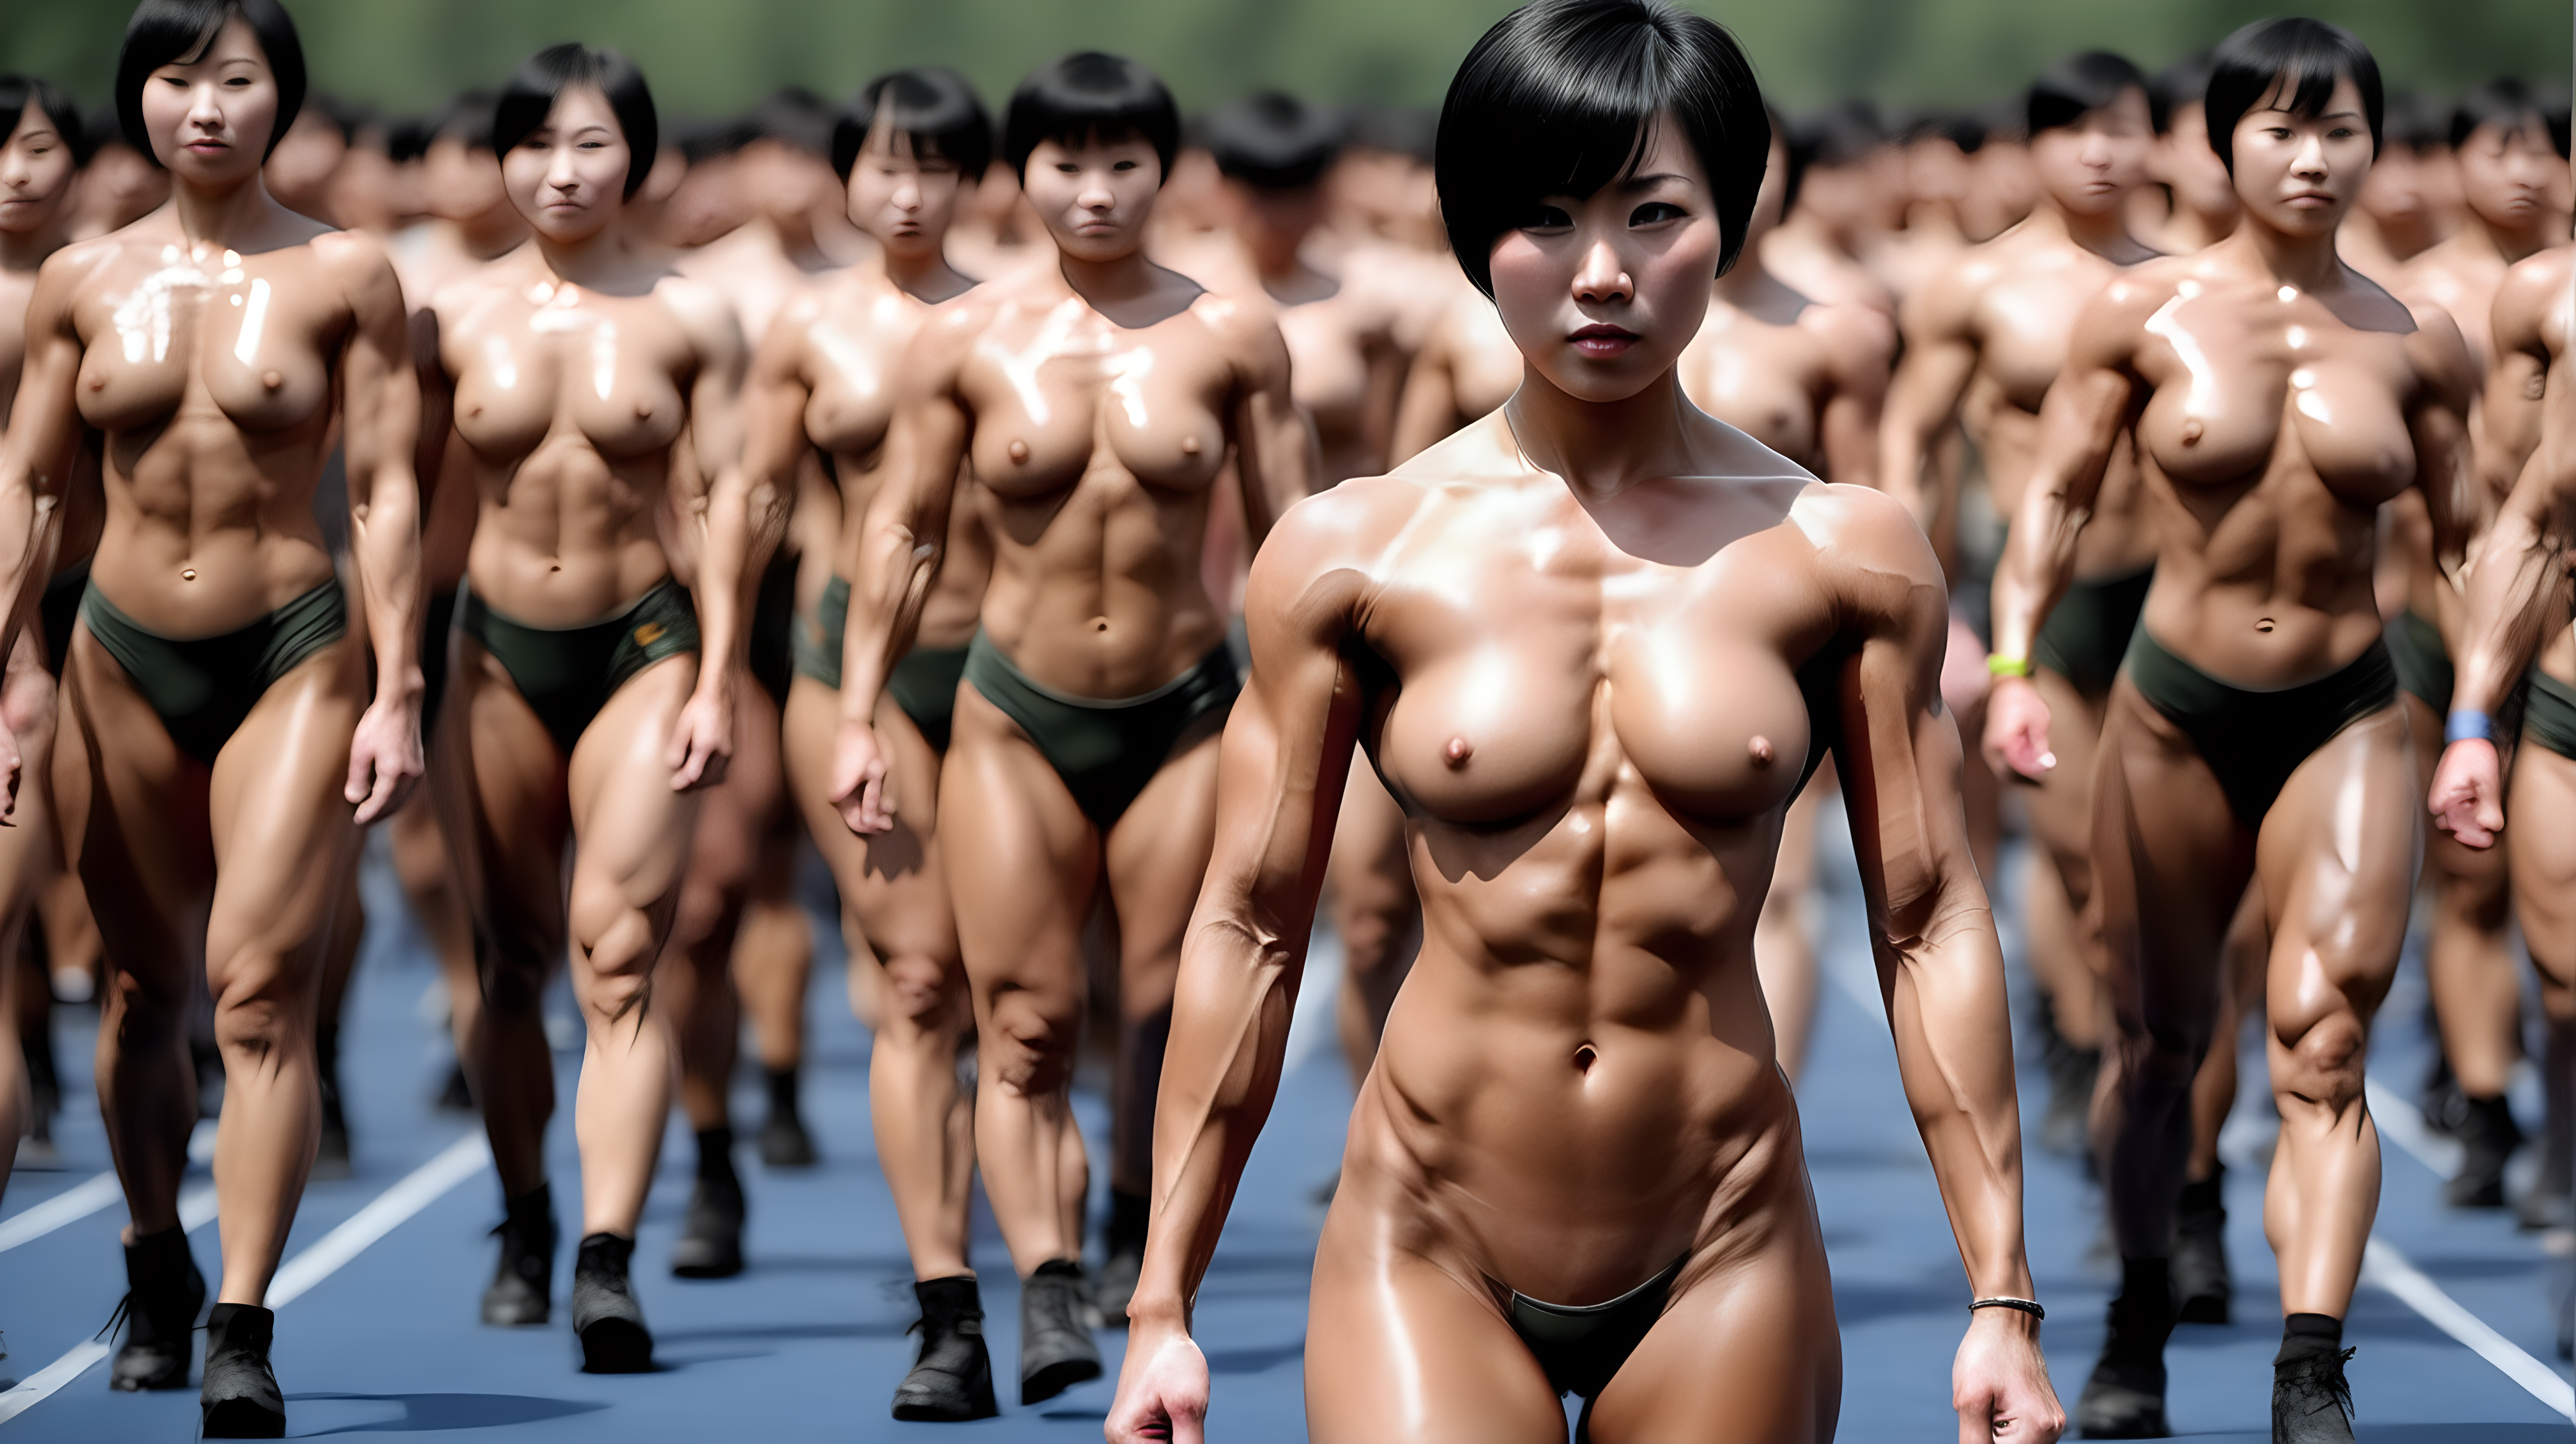 中国女兵
短发
黑发
满身汗水
裸体
皮肤黝黑
参加健美大赛